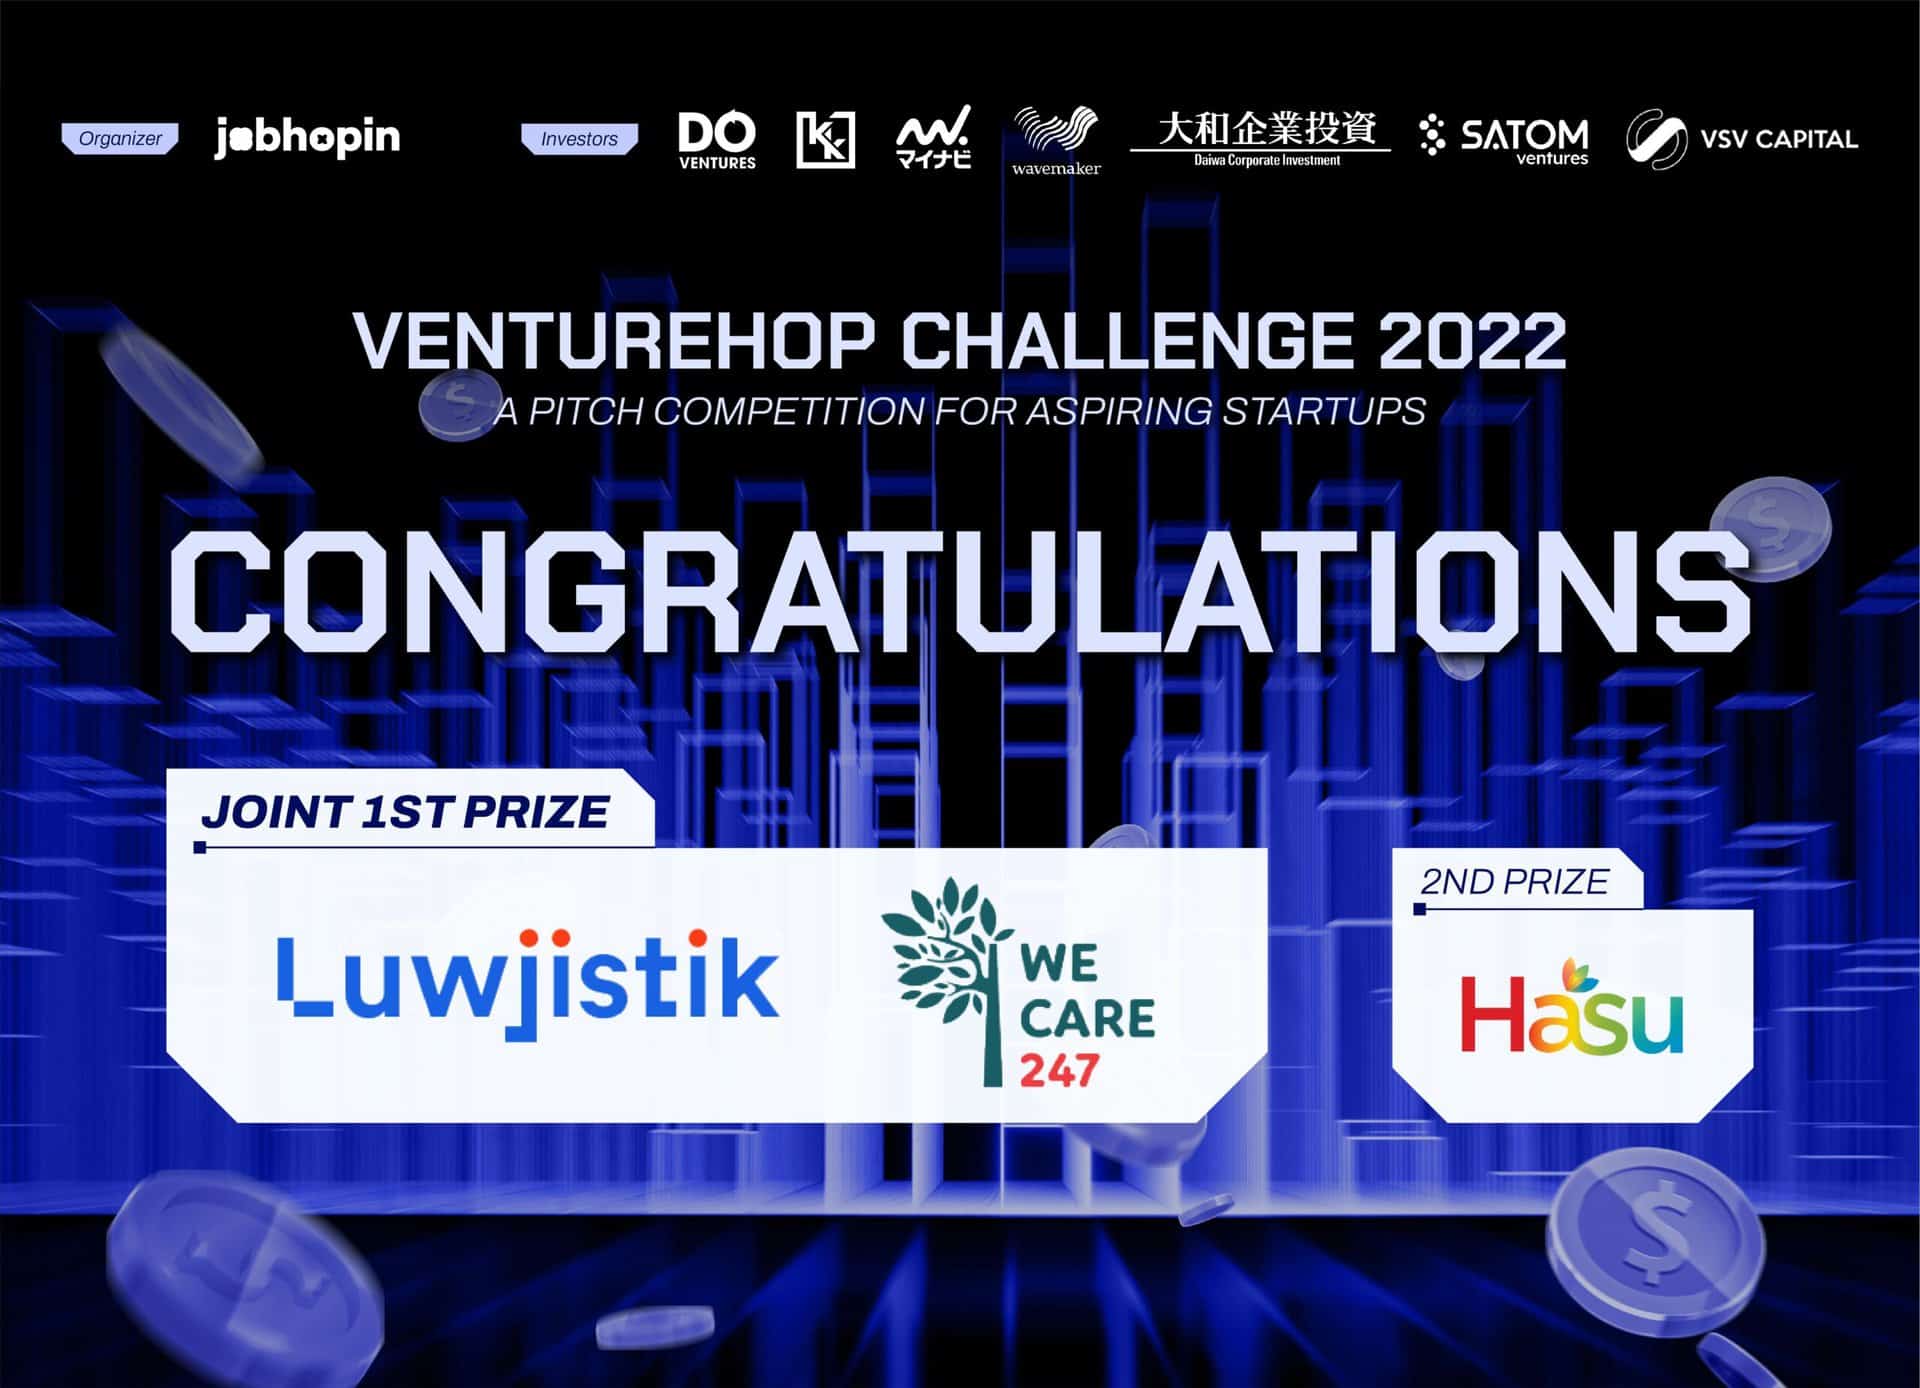 The winners of VentureHop Challenge 2022